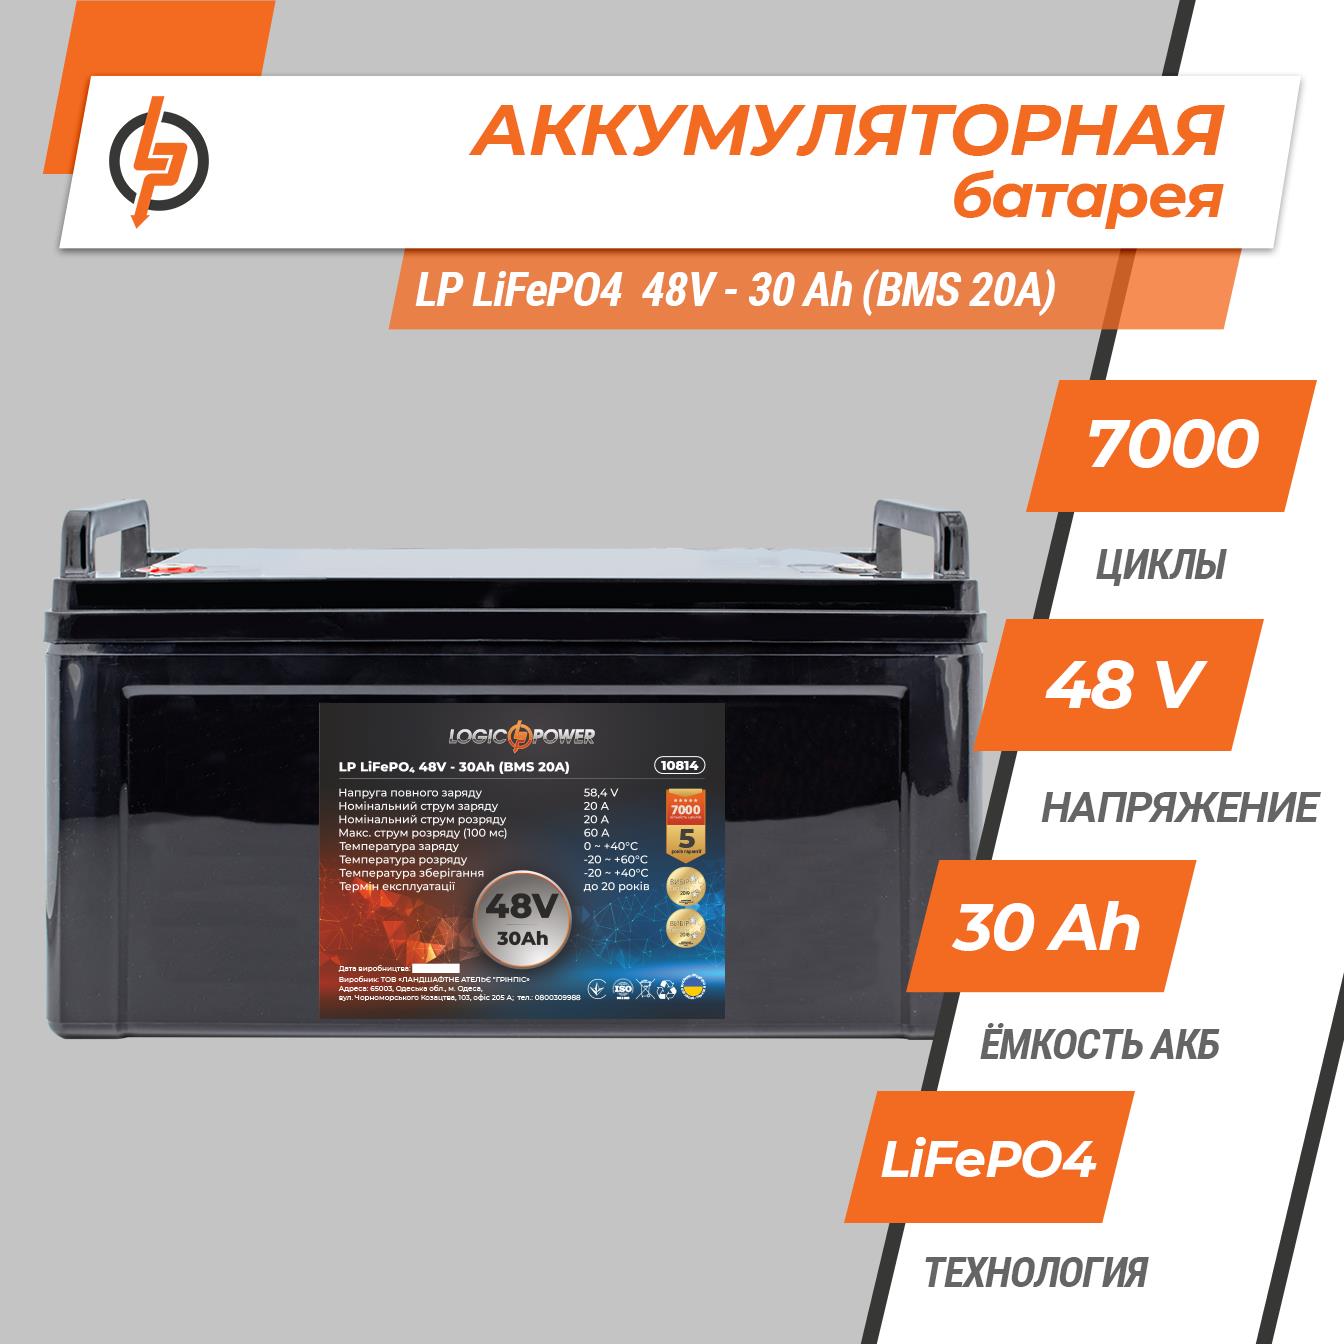 Аккумулятор литий-железо-фосфатный LogicPower LP LiFePO4 48V - 30 Ah (BMS 20A) пластик (10814) цена 0 грн - фотография 2